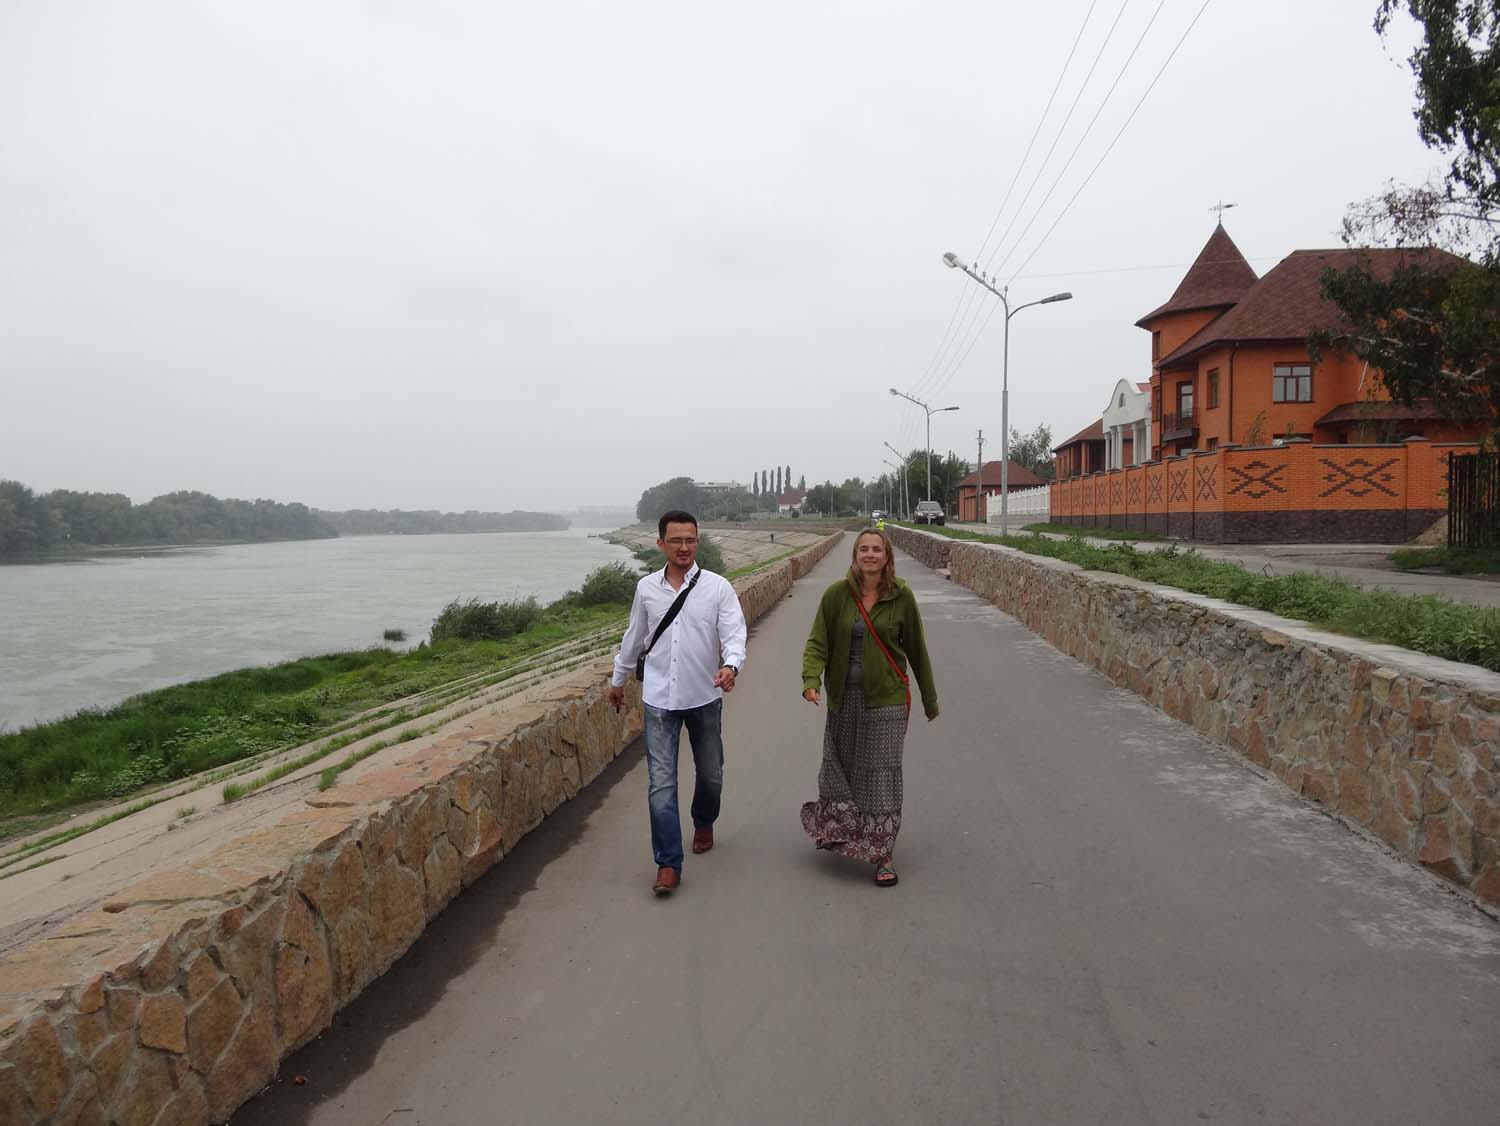 a stroll on Pavlodar's boulevard